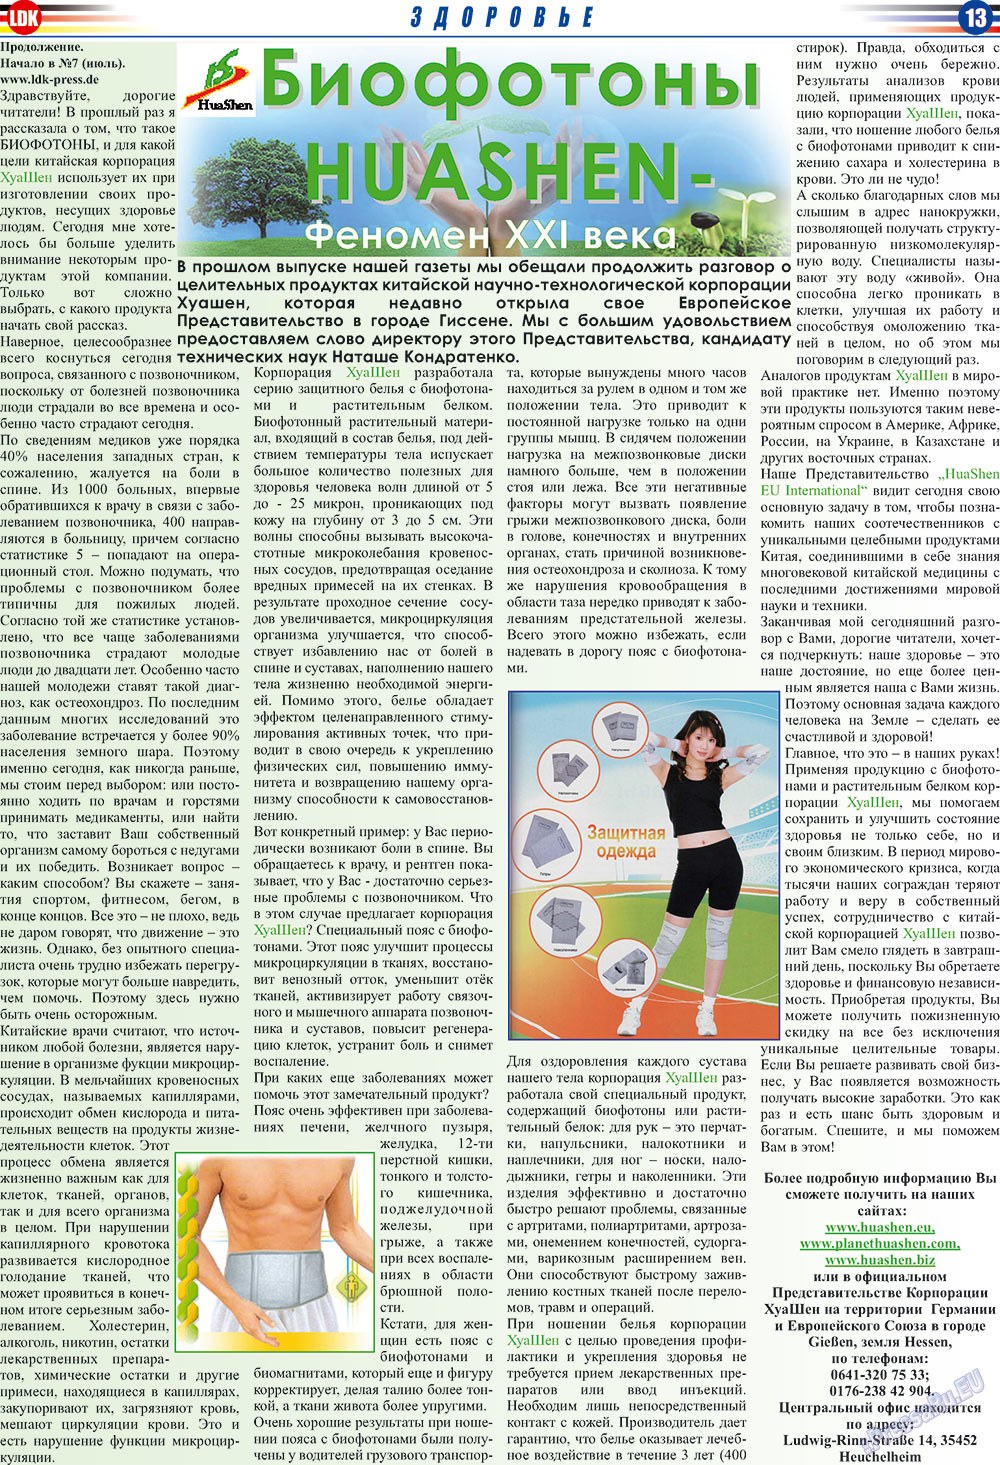 LDK по-русски (газета). 2009 год, номер 8, стр. 13